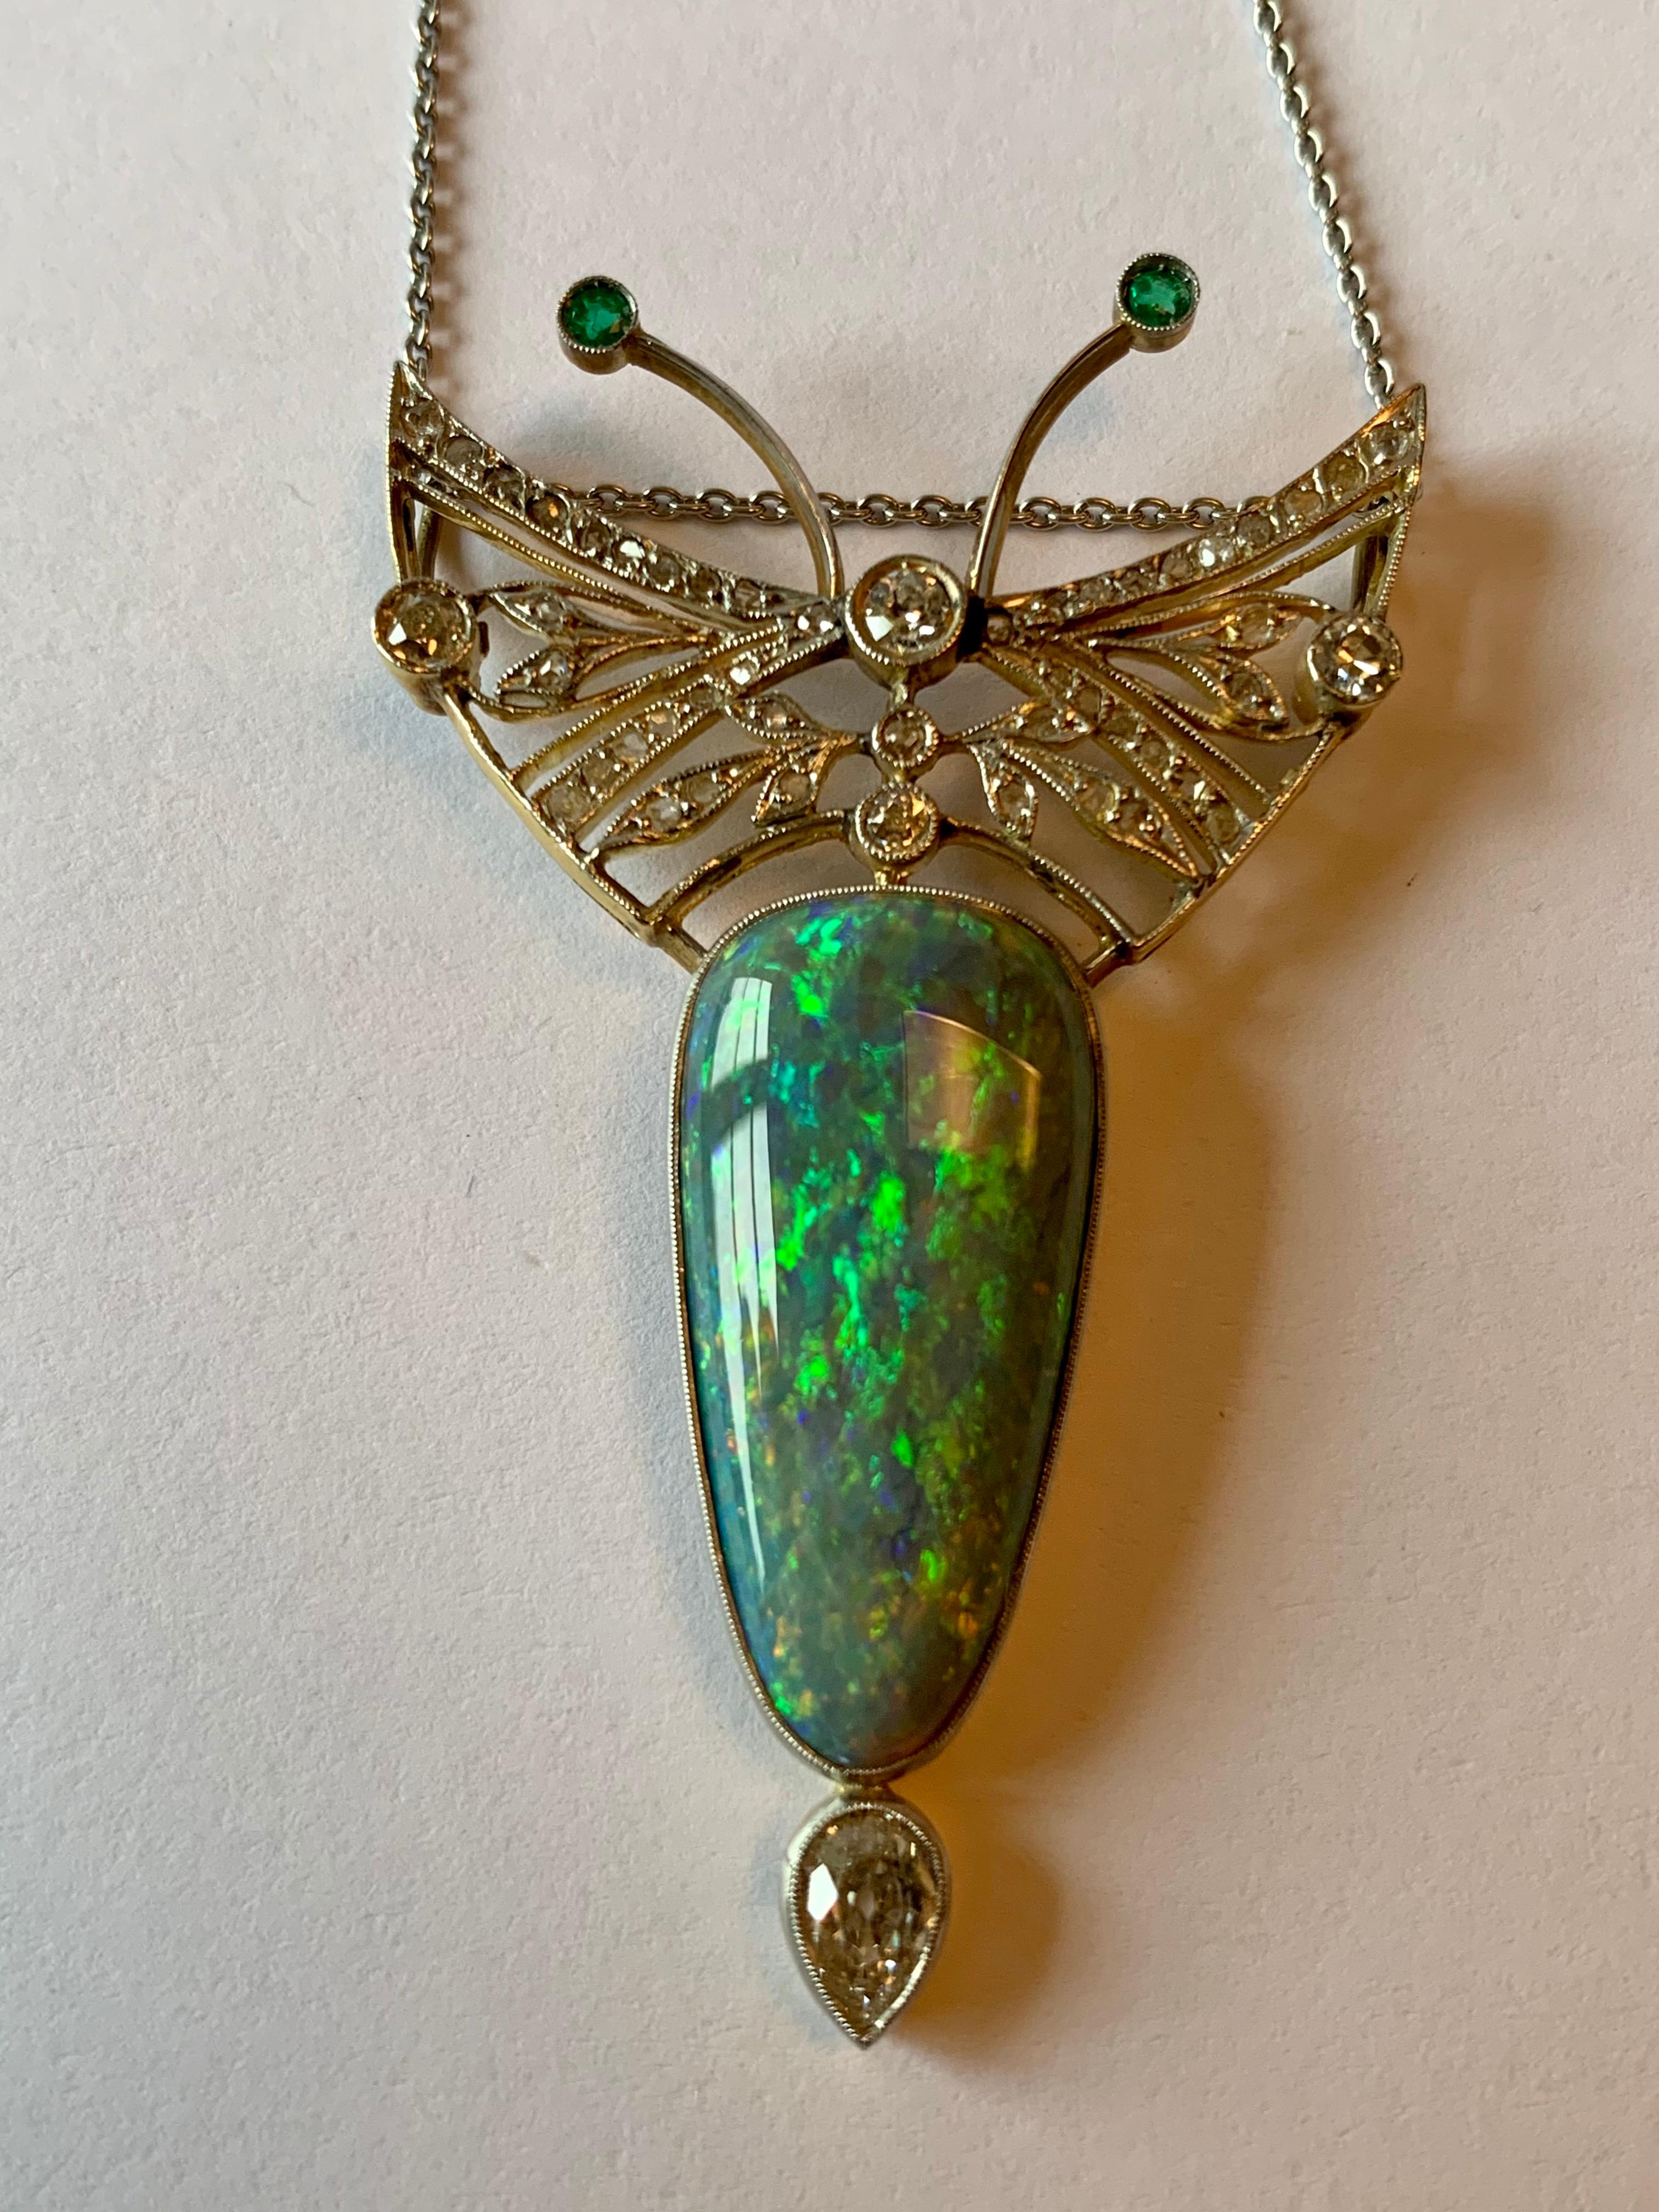 queen elizabeth opal necklace